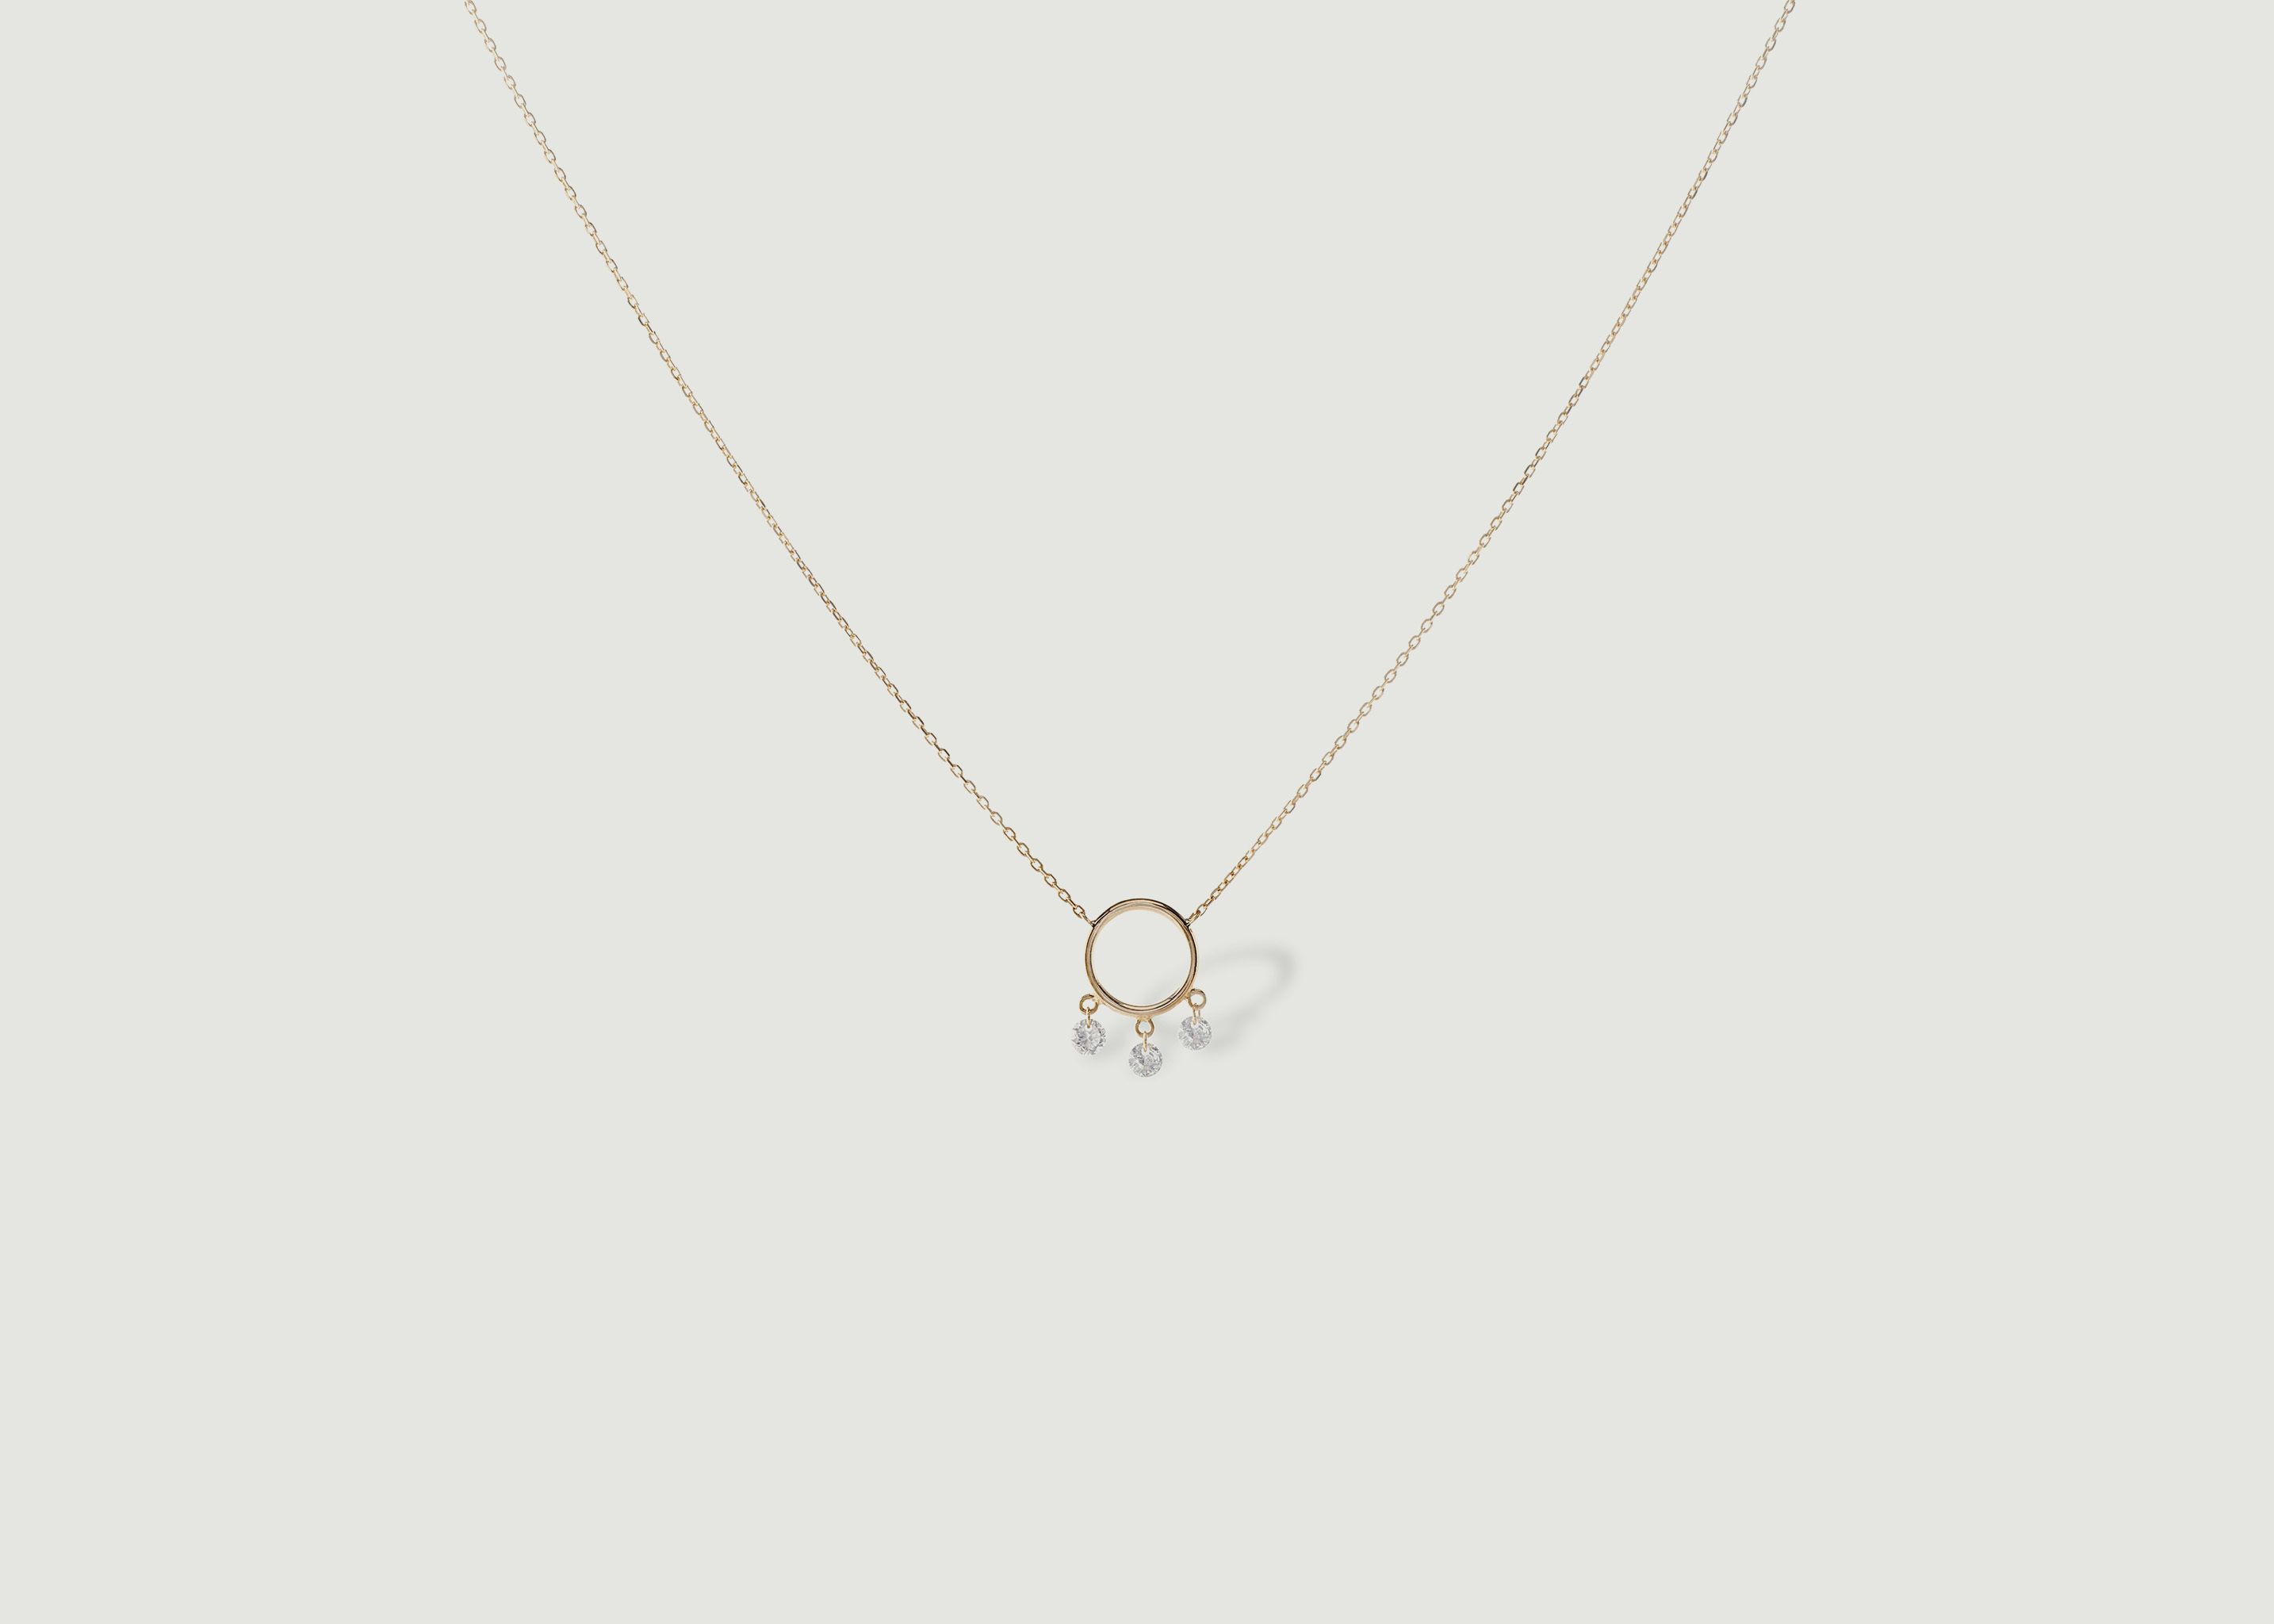 Bohème 3 gold and diamonds necklace - Persée Paris